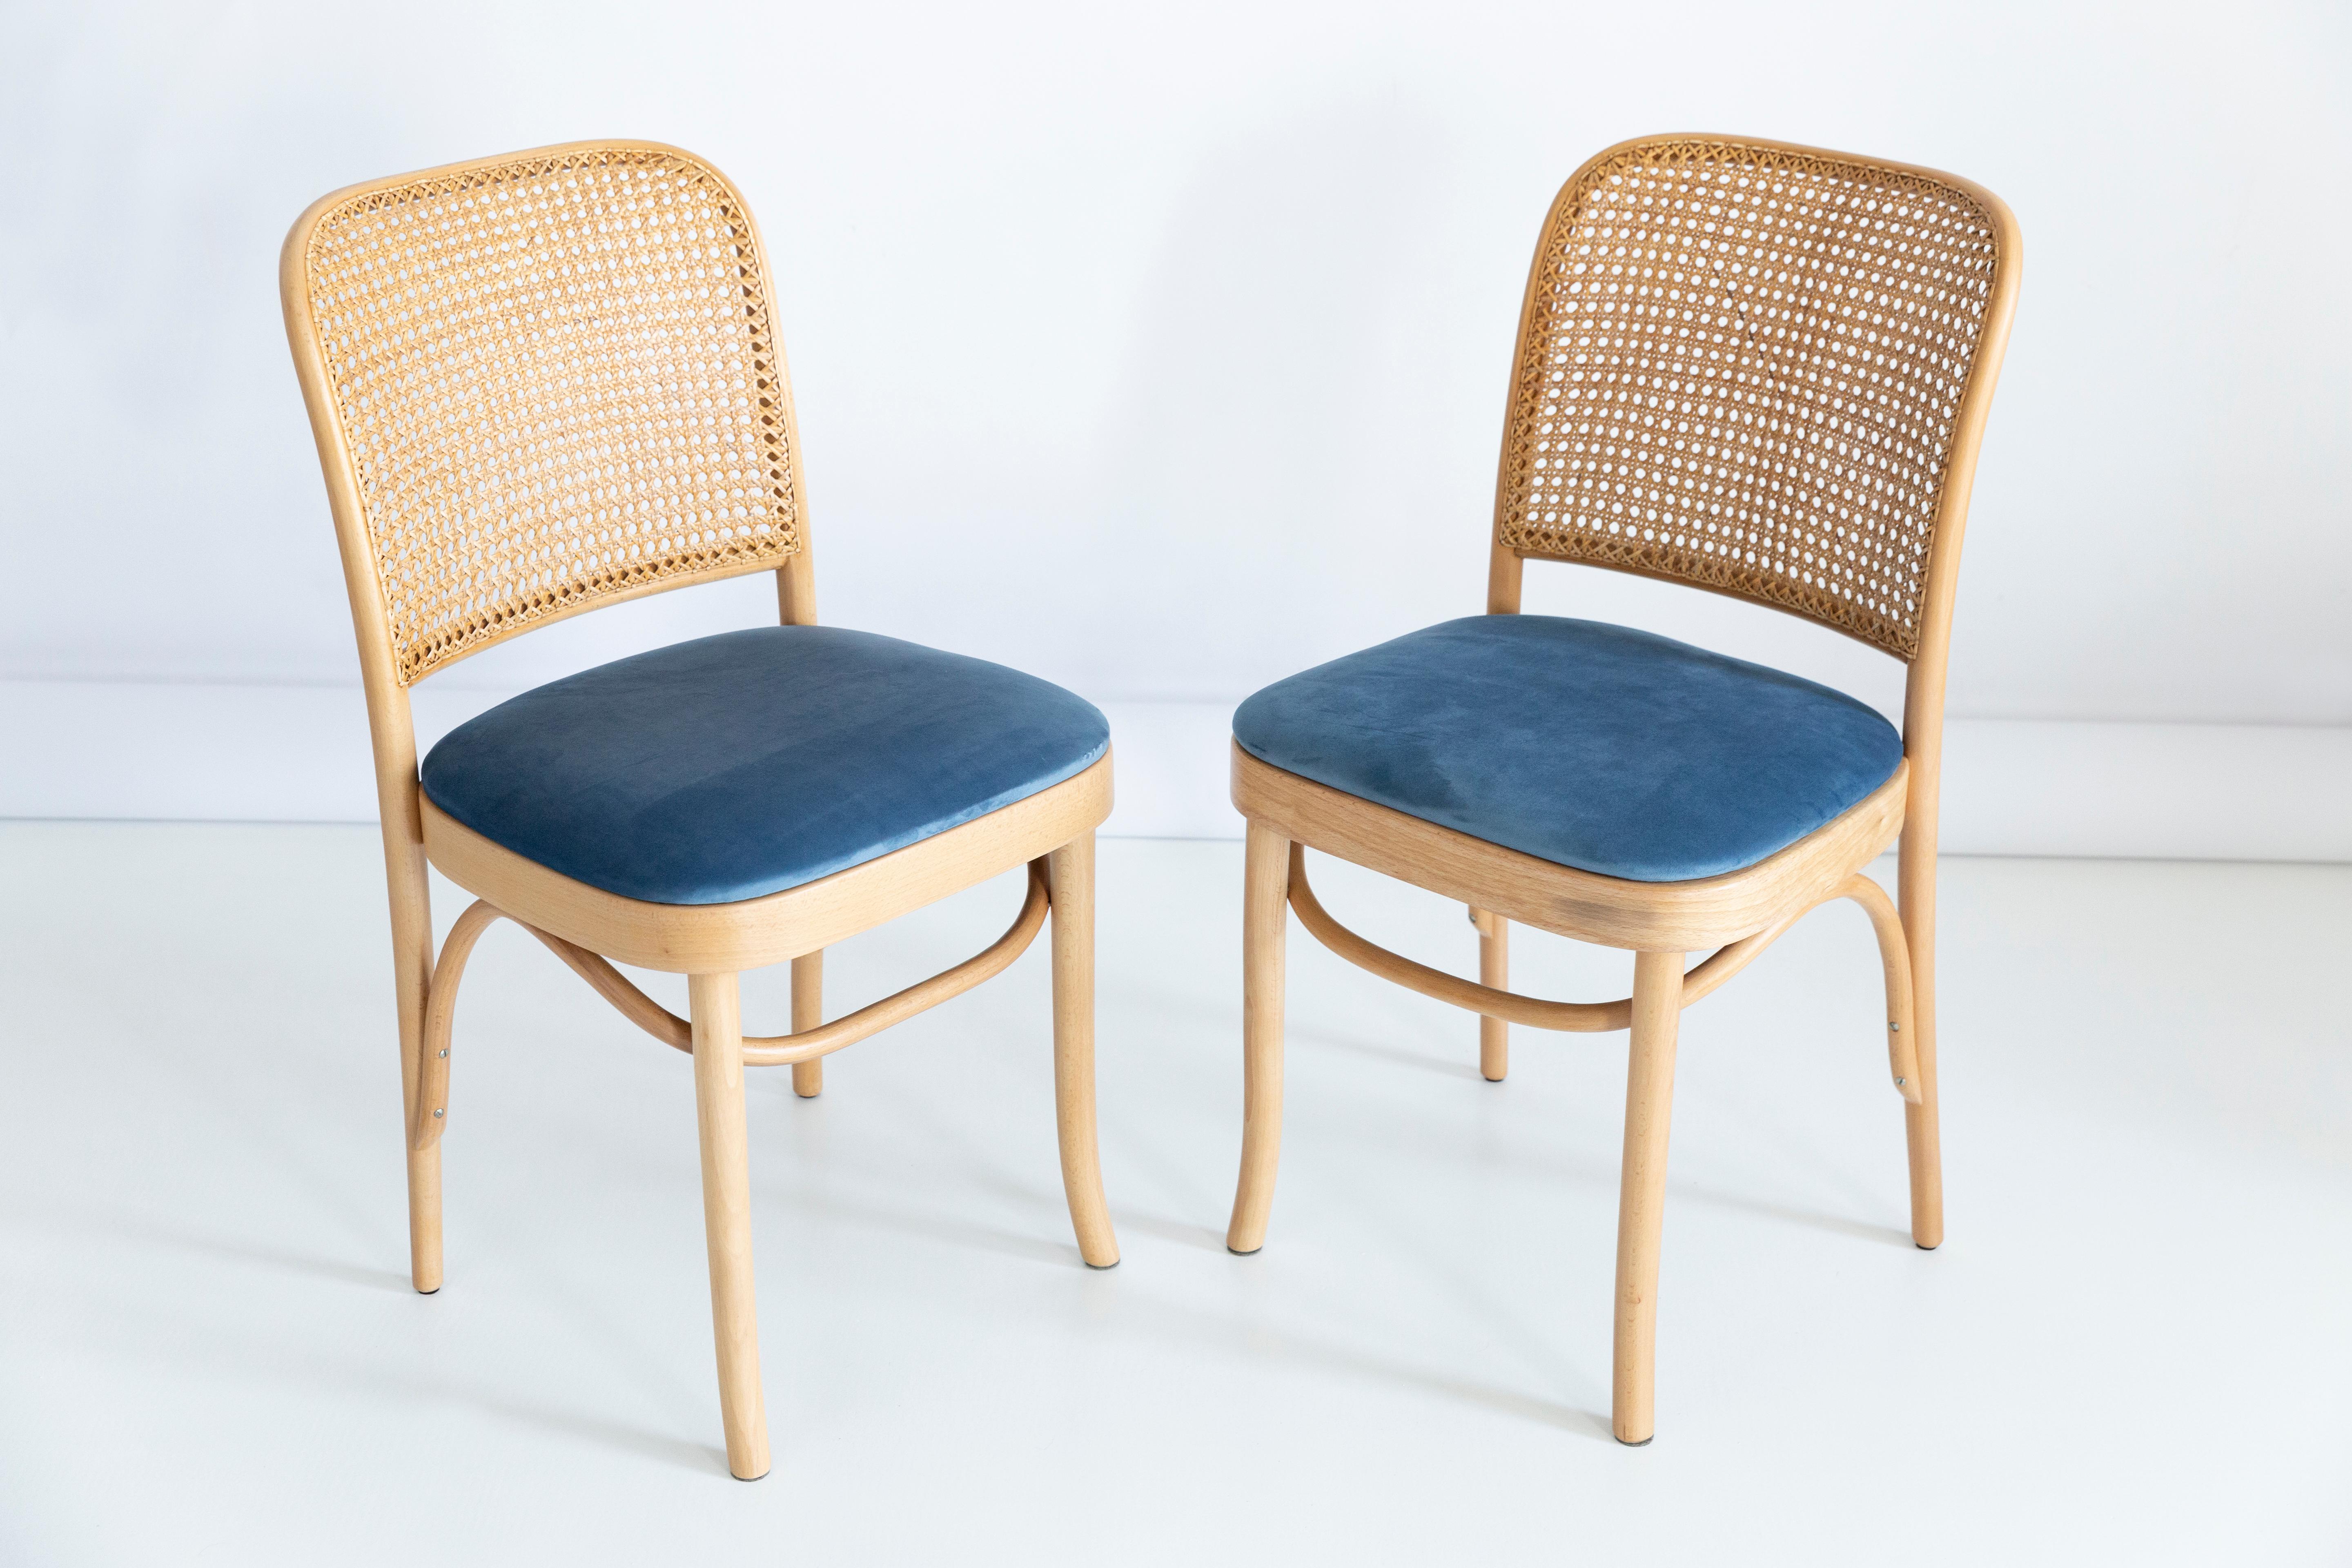 Ein Satz von 2 Stühlen aus Rattan und Holz. Die Möbel wurden von Helena und Jerzy Kurmanowicz entworfen. Sie wurden in der Holzverarbeitungsfabrik Thonet hergestellt und von uns gründlich renoviert. Die Konstruktion ist aus mit Wasserbeize hellbraun